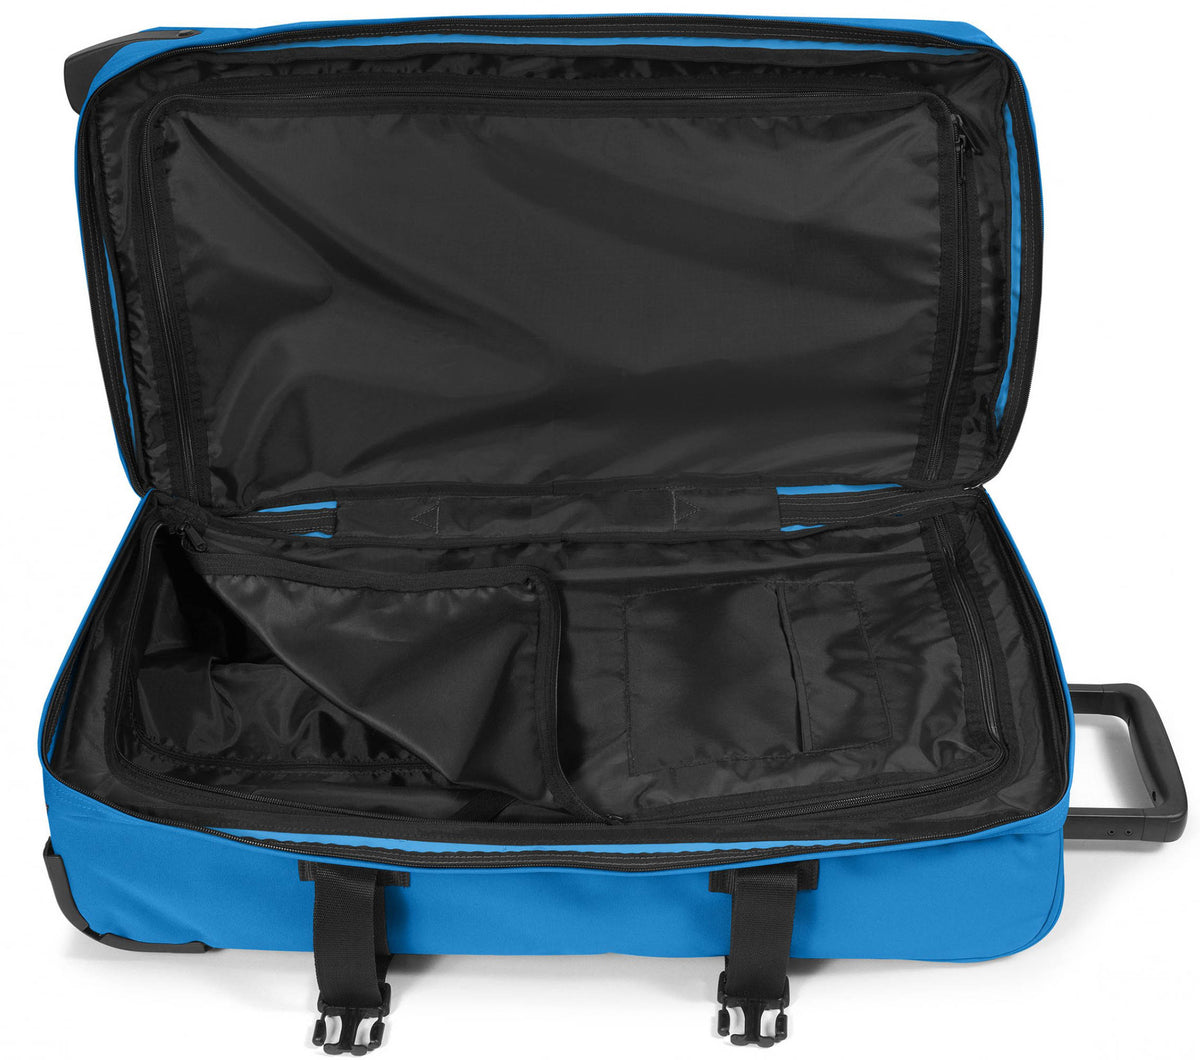 Eastpak Tranverz M Suitcase - Vibrant Blue